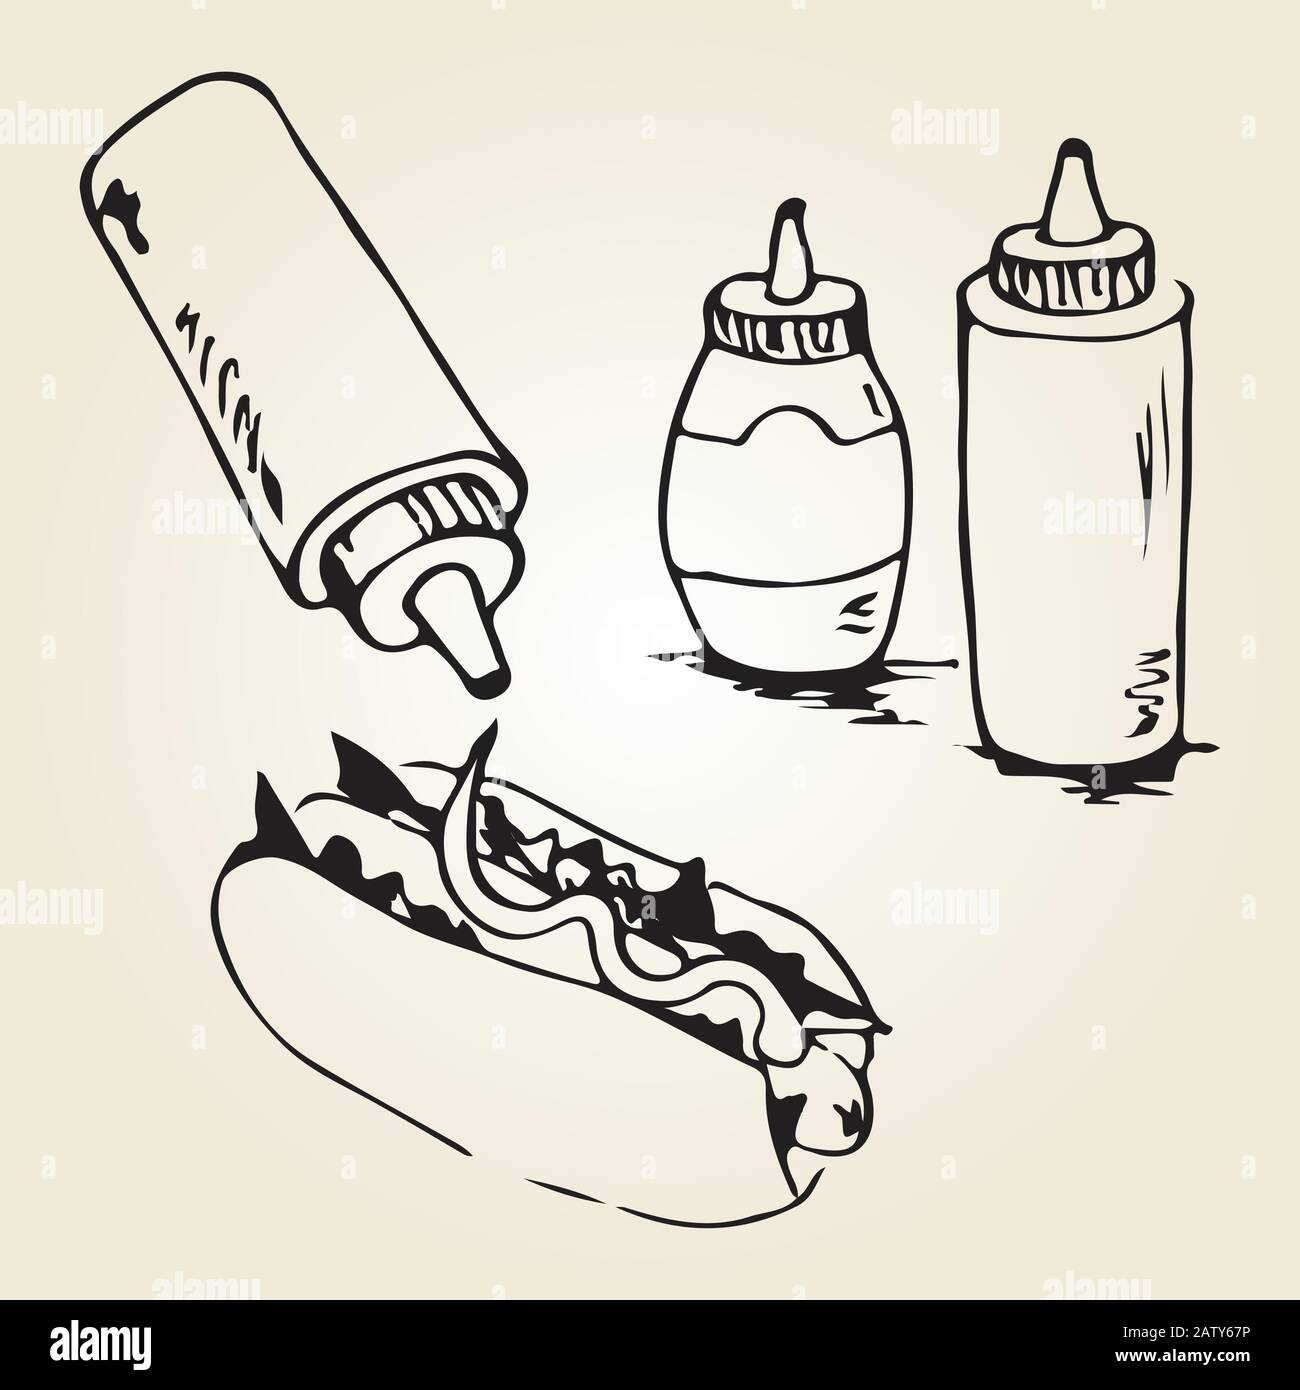 Handzeichnung mit heißem Hund. Fast-Food-Designelemente, Skizze von Hotdog mit Soßen in Flaschen. Monochrome EPS8-Vektorgrafiken. Stock Vektor